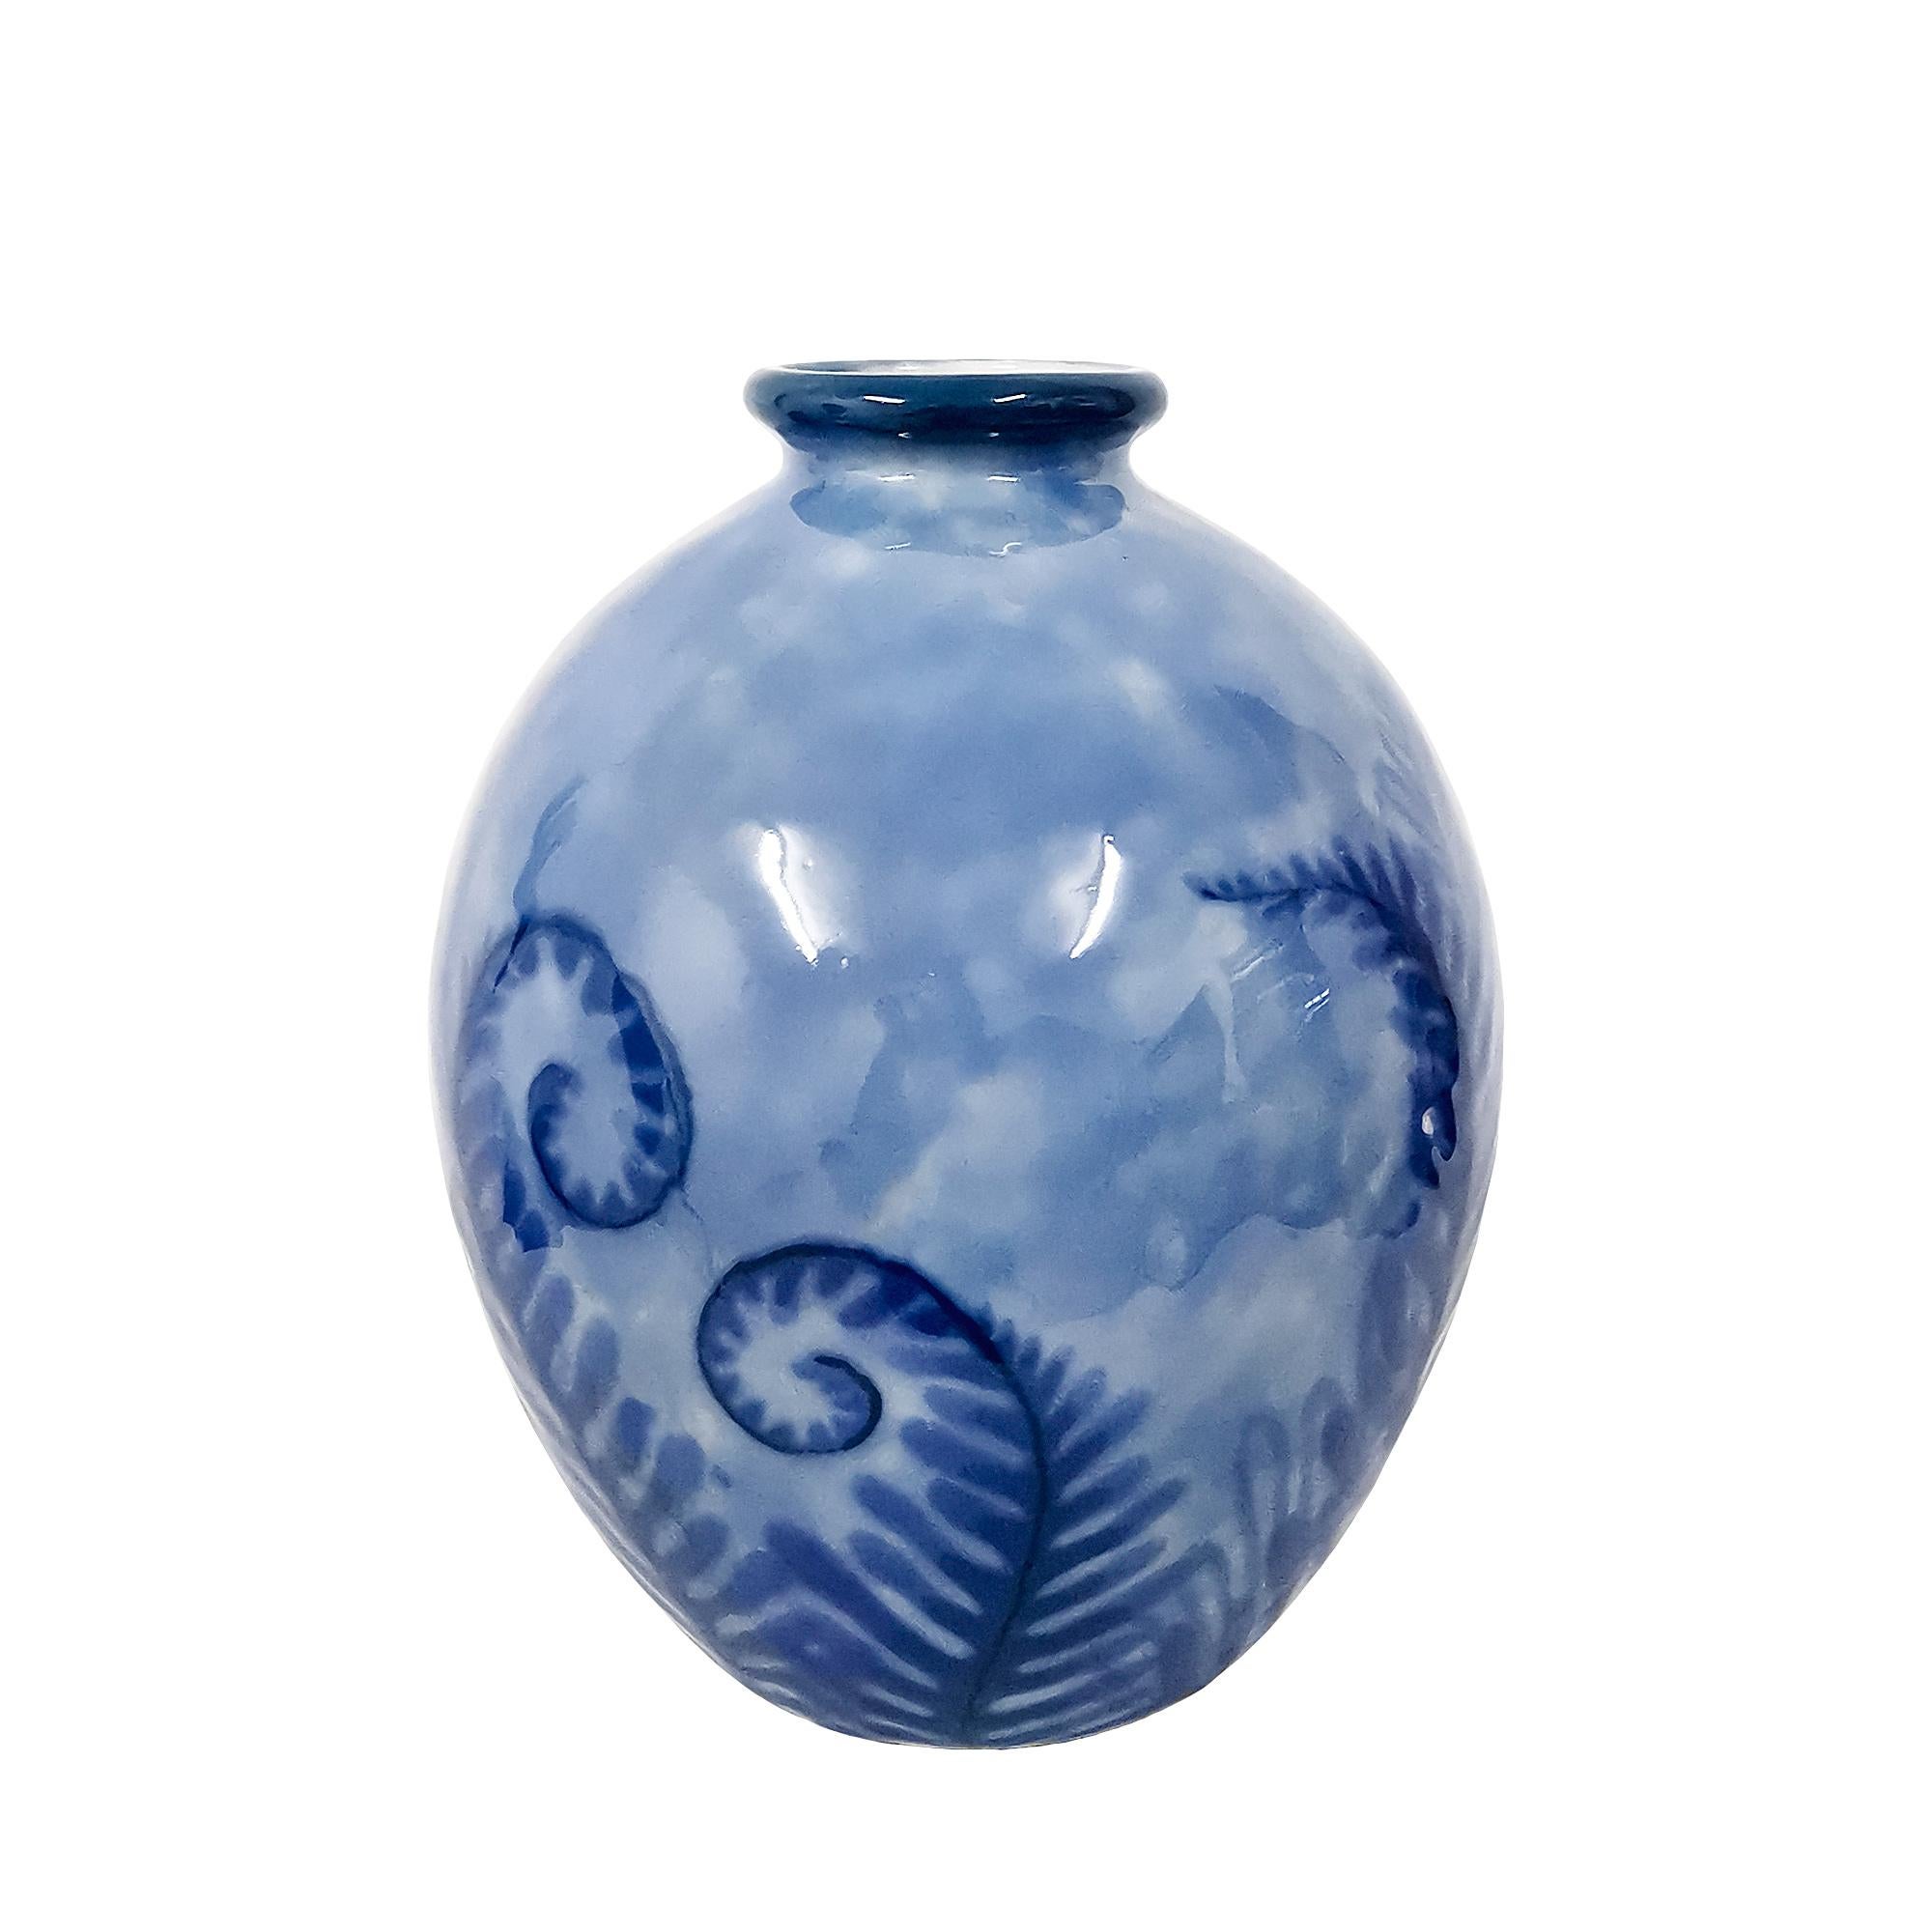 Grand vase en porcelaine de Limoges décoré de fougères dans les tons bleus. Petits défauts de cuisson.

Signé et tamponné : Camille Tharaud.

Limoges, France vers 1930.